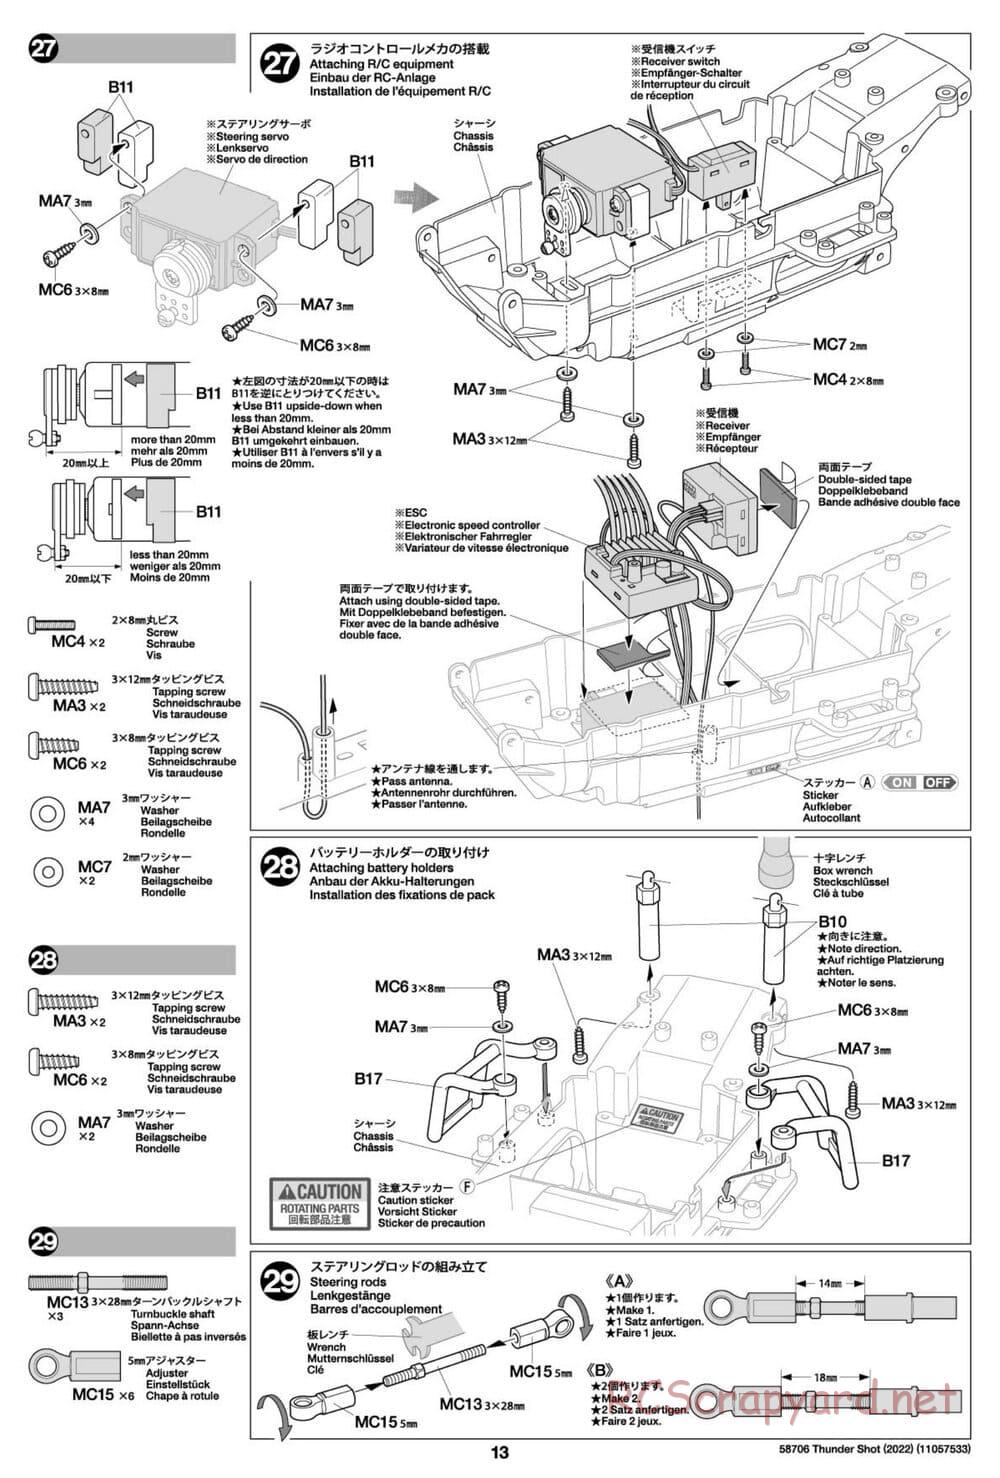 Tamiya - Thunder Shot (2022) - TS1/TS2 Chassis - Manual - Page 13